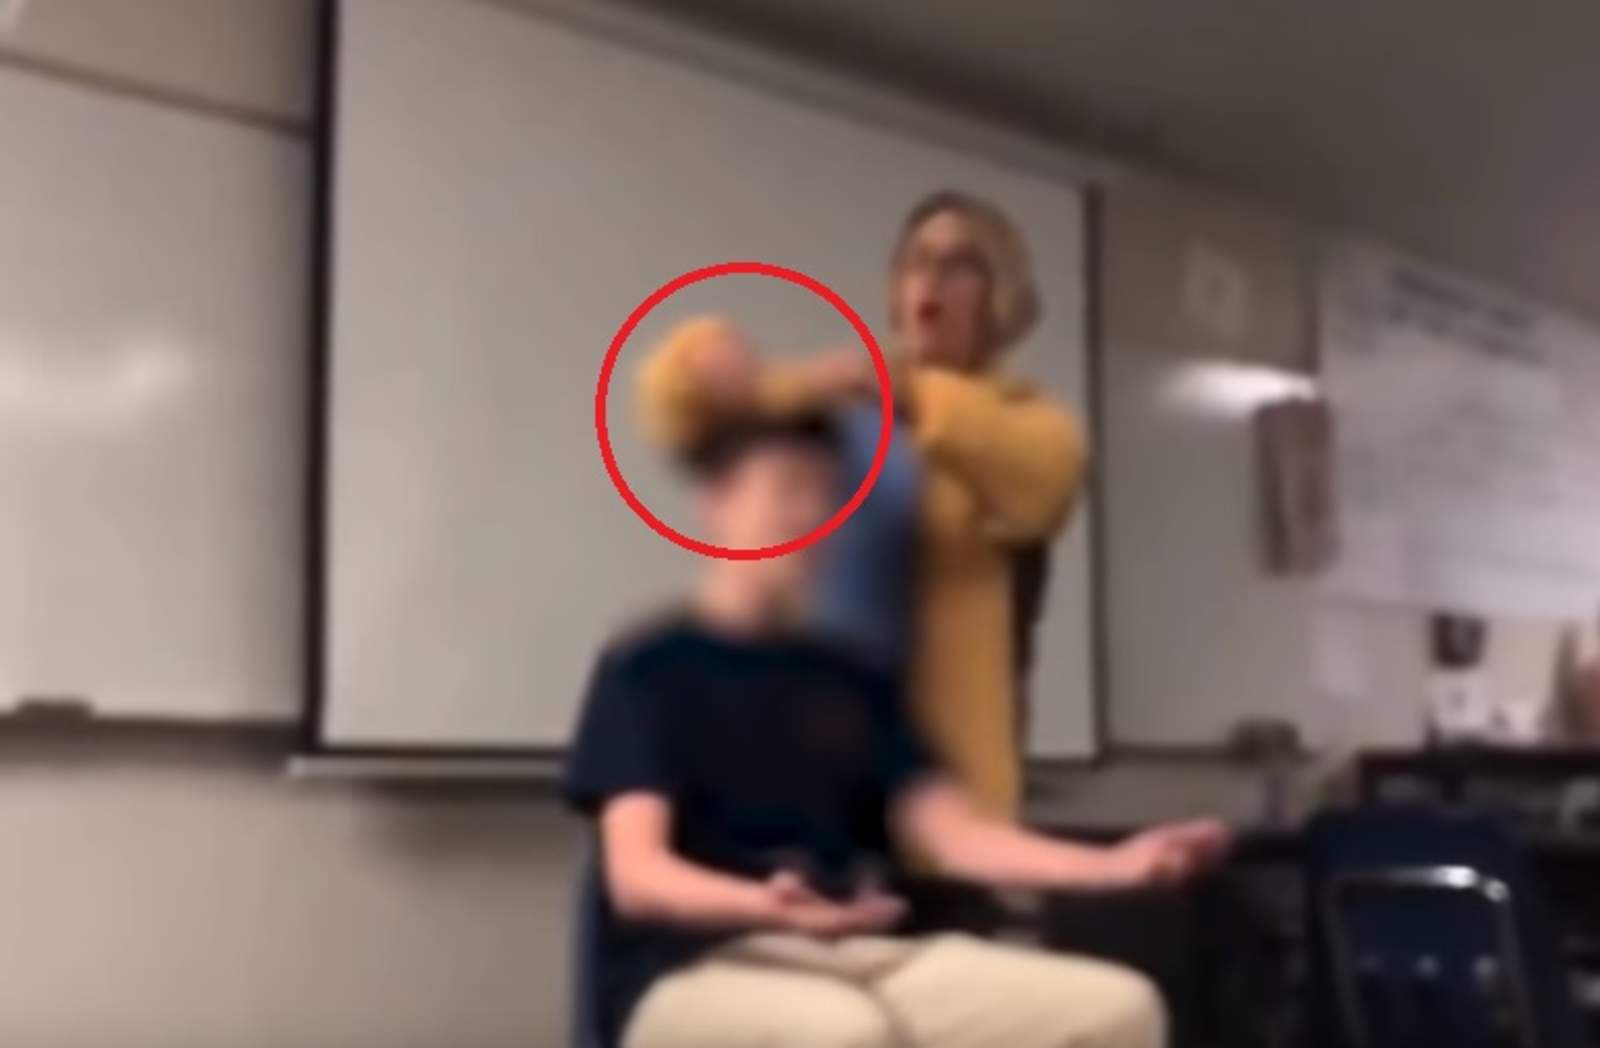 Maestra enfrenta cargos por cortar el cabello de sus alumnos. Noticias en tiempo real